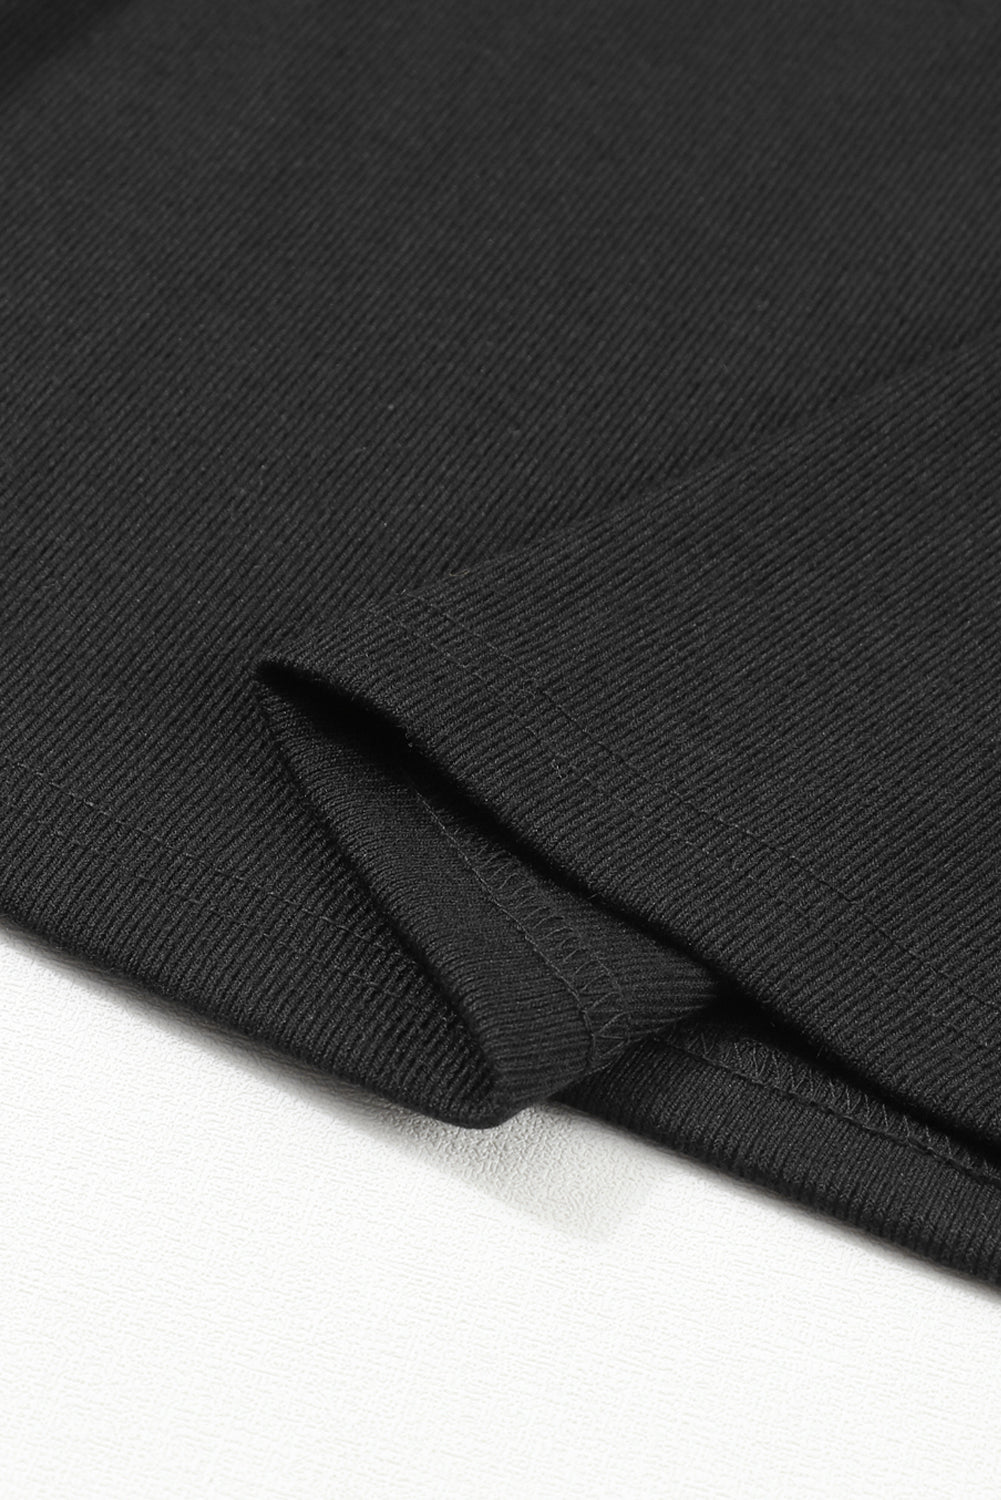 Black Ribbed Peekaboo Cutout Long Sleeve Top